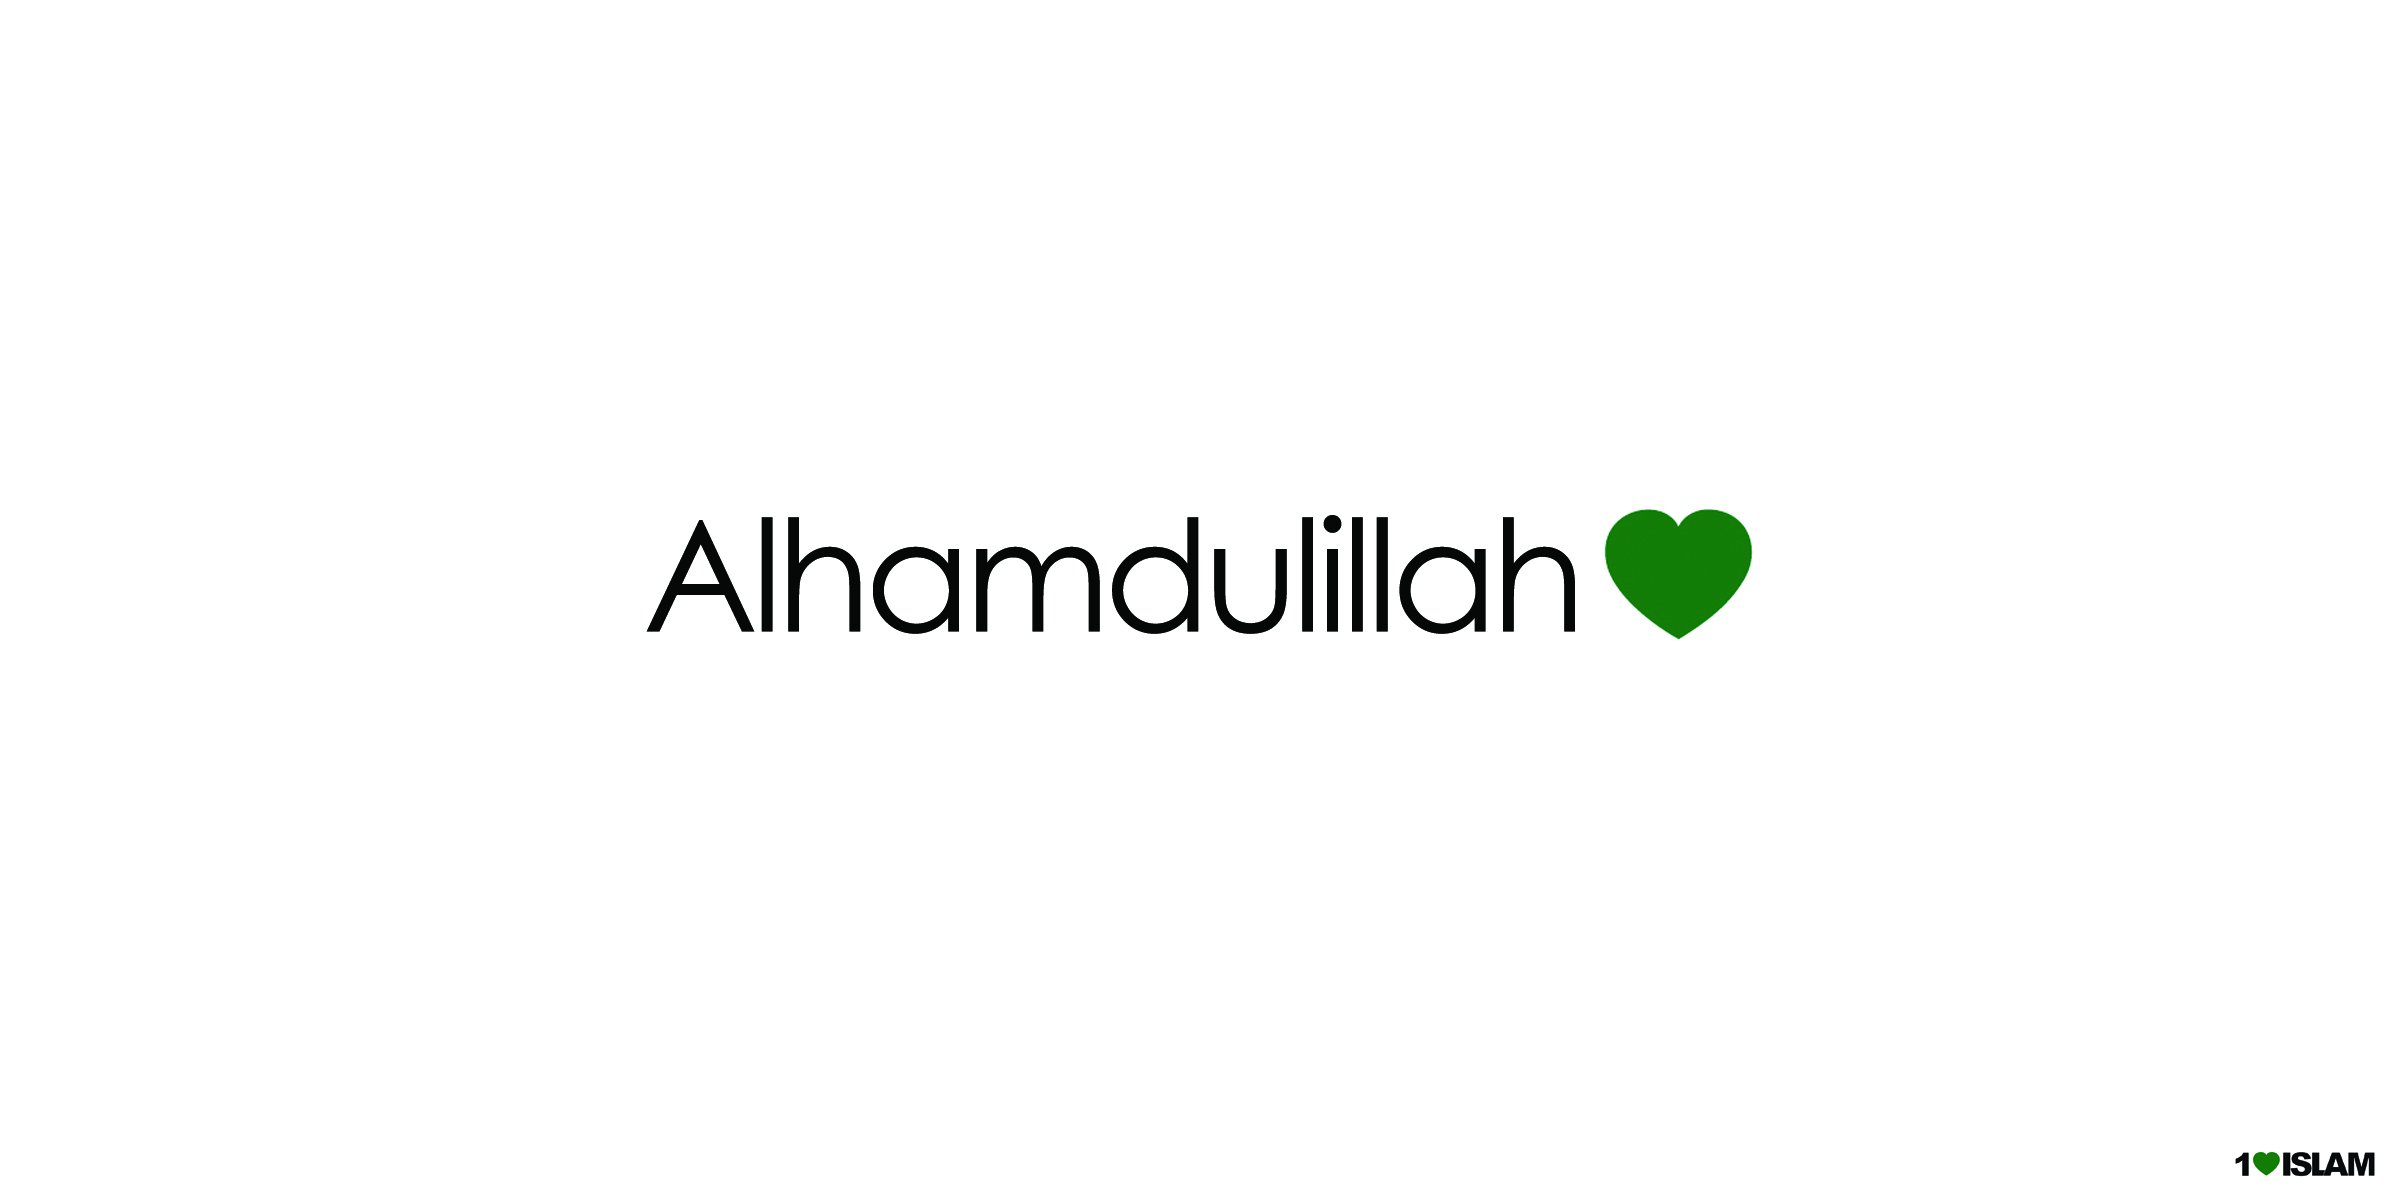 Que significa alhamdulillah